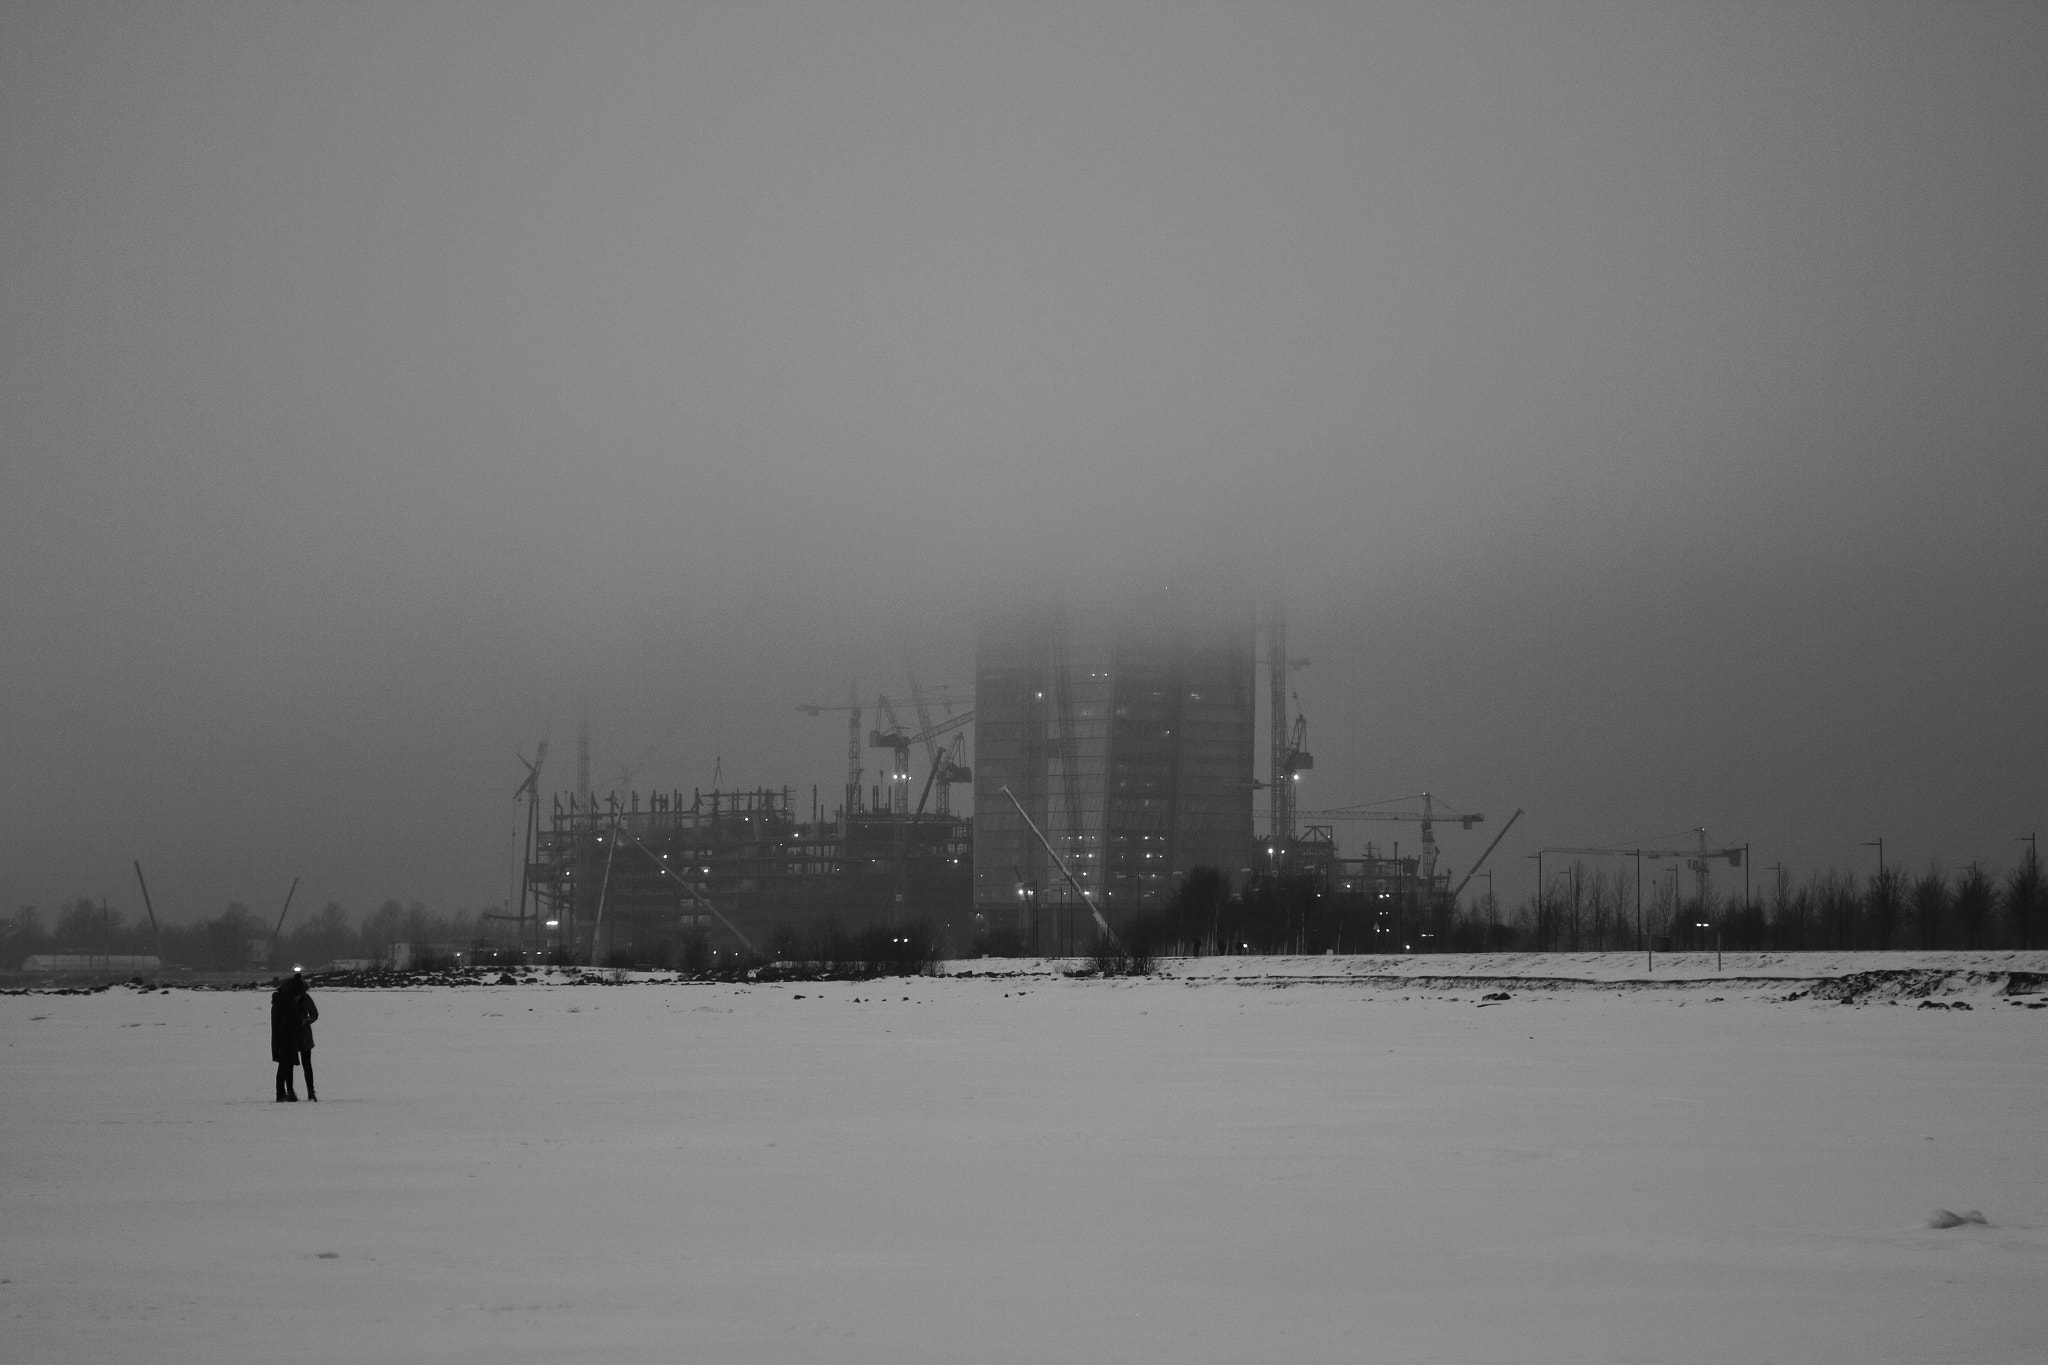 Canon EOS 7D sample photo. Gloomy mood photography